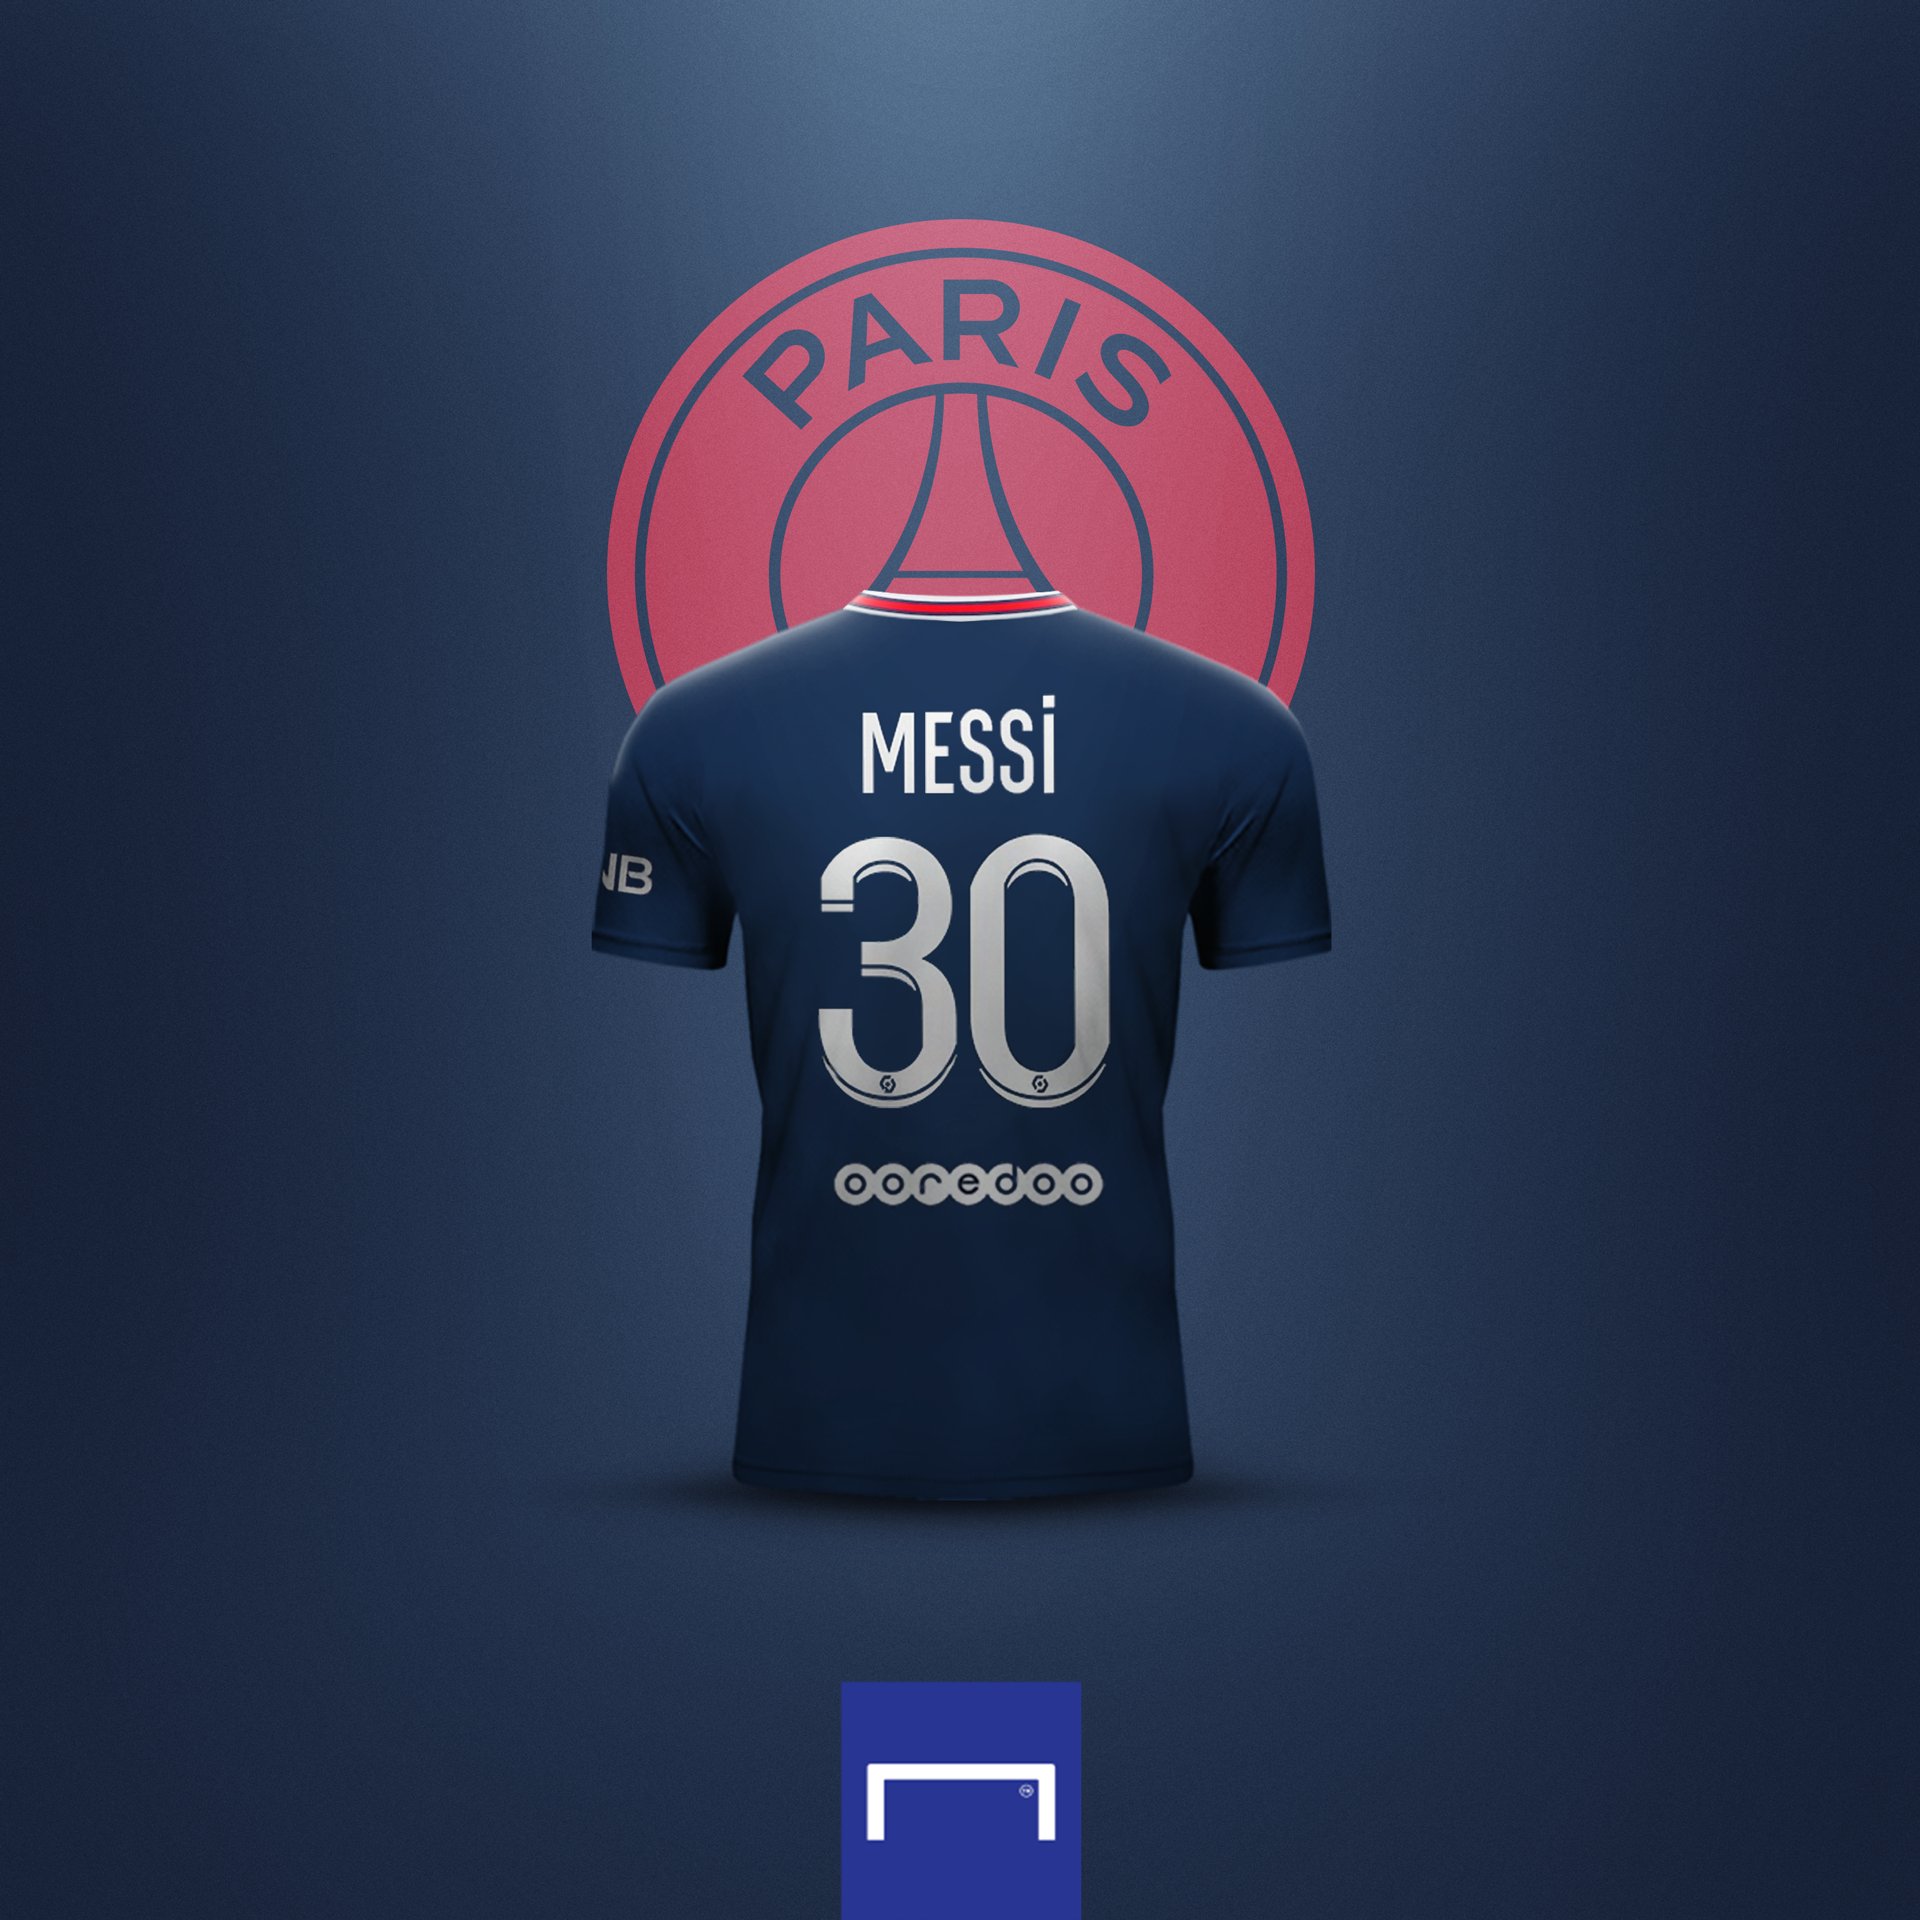 Số áo của cầu thủ trong mỗi đội bóng luôn có ý nghĩa đặc biệt và không là ngoại lệ với Barcelona và các cầu thủ của họ, đặc biệt là Messi. Hãy cùng khám phá sự đổi mới về số áo của Messi trong đội bóng Barcelona qua những hình ảnh đầy đặn sức hút.